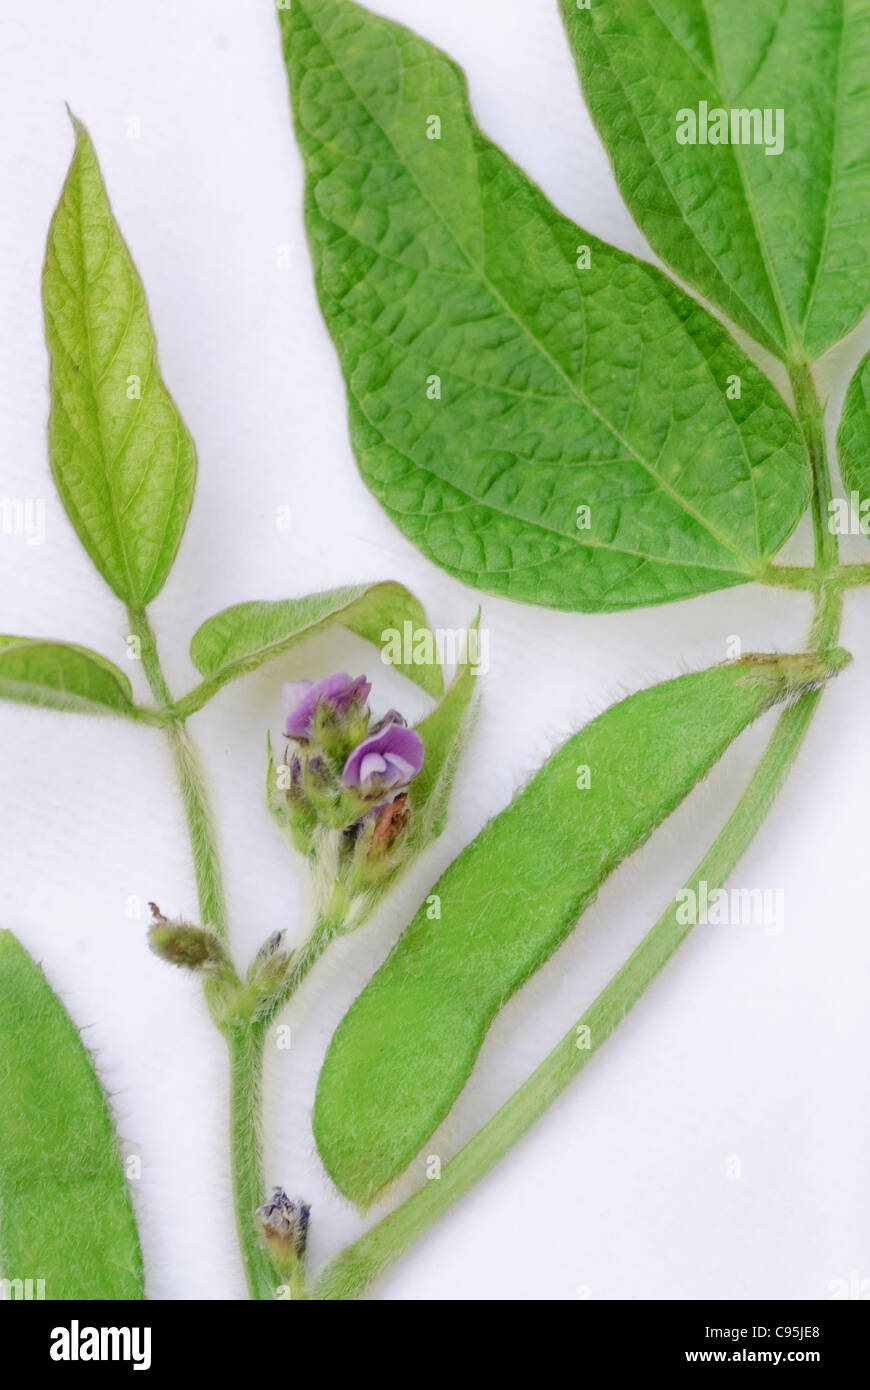 Parties de la plante de soja, haricots, fleurs, feuilles feuille macro détails sur fond blanc, Glycine max Banque D'Images